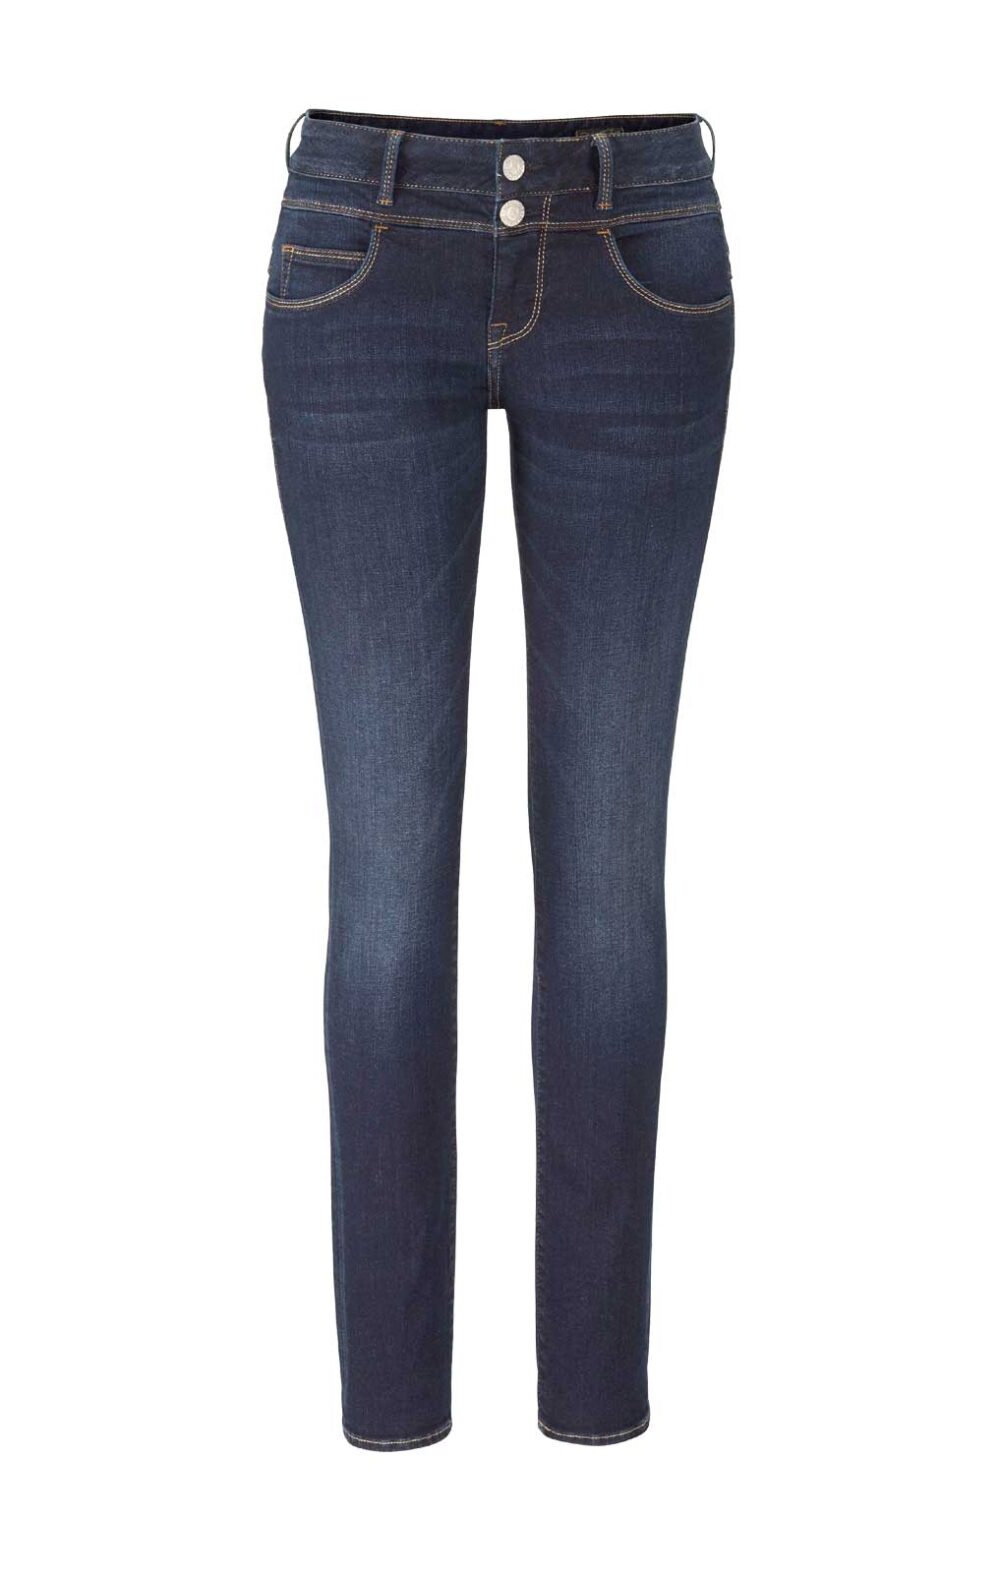 Herrlicher Damen Jeans Hose Stretch dark blue Missforty Online kaufen